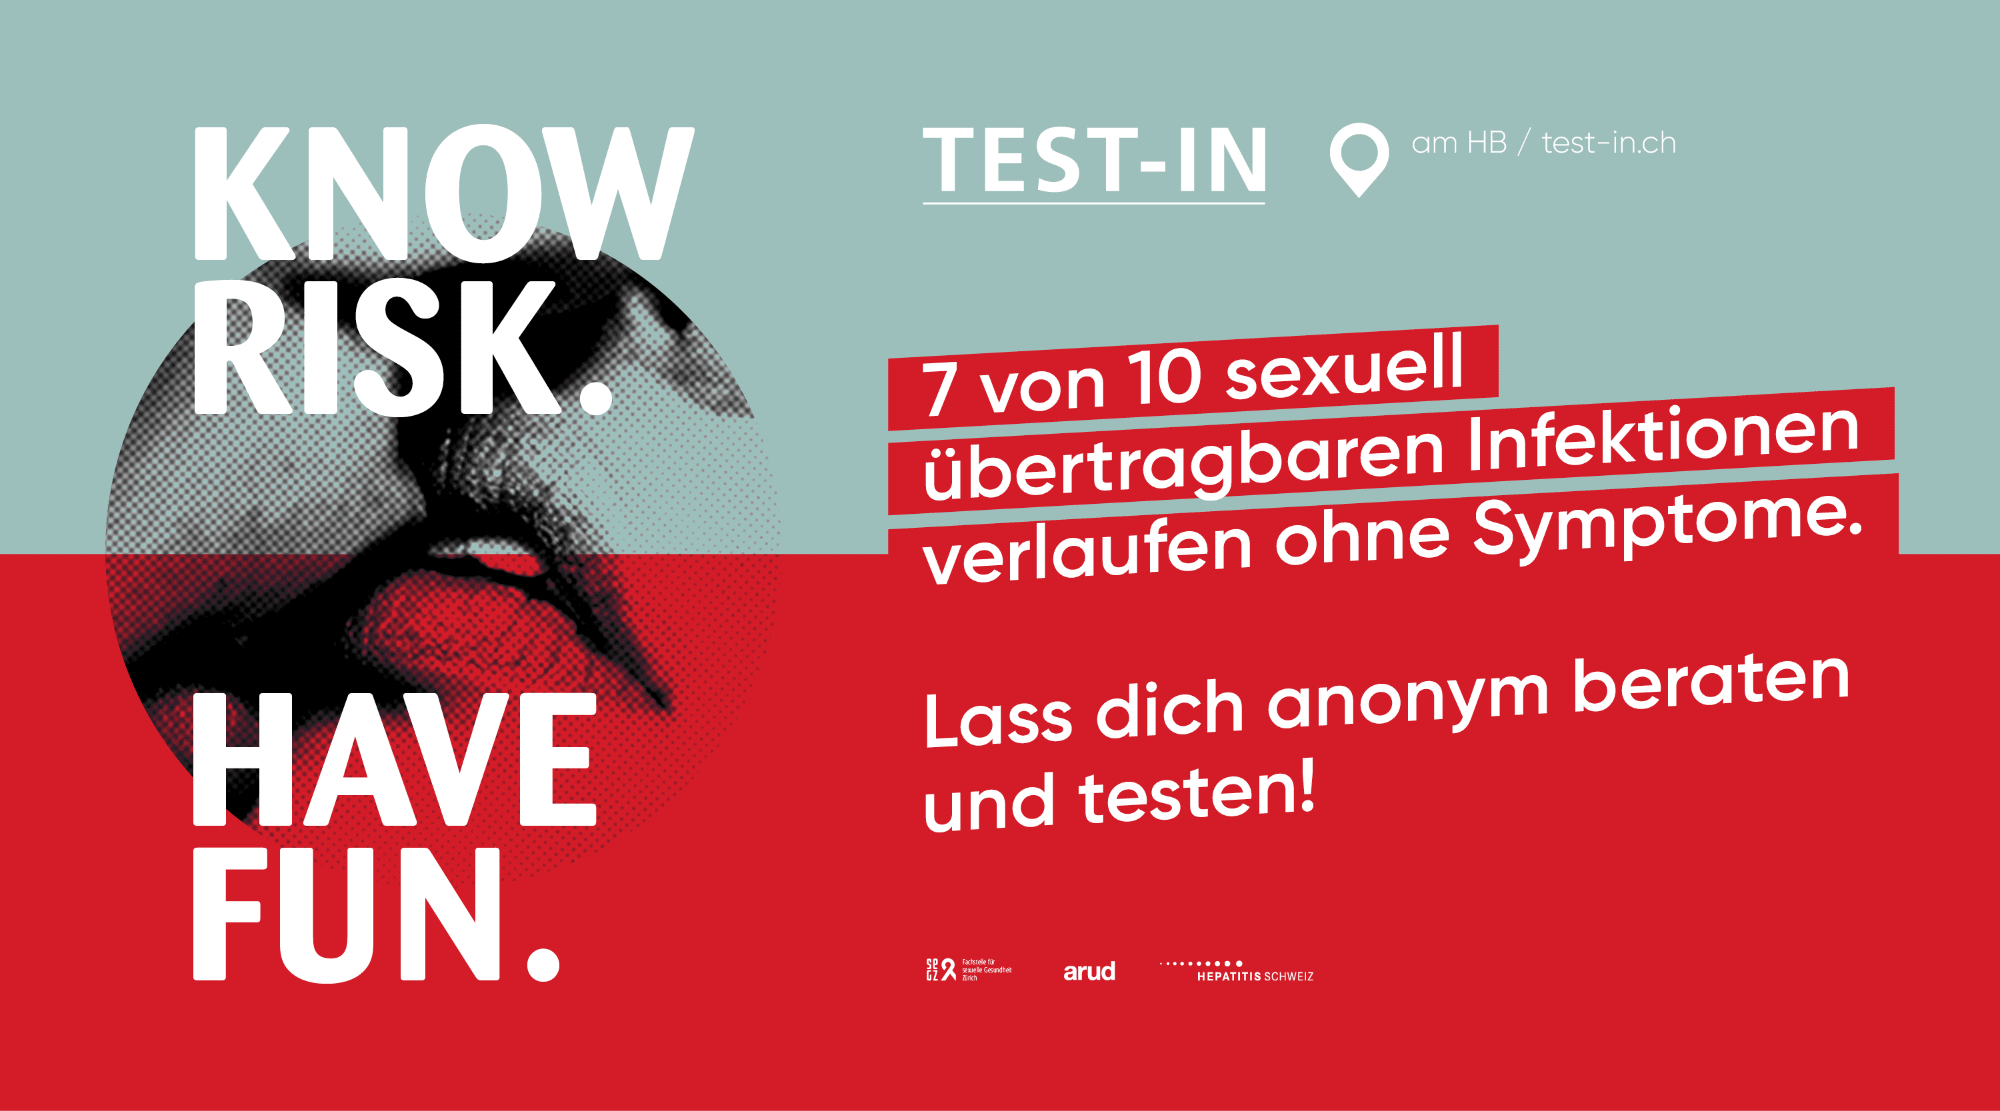 A sexualität test